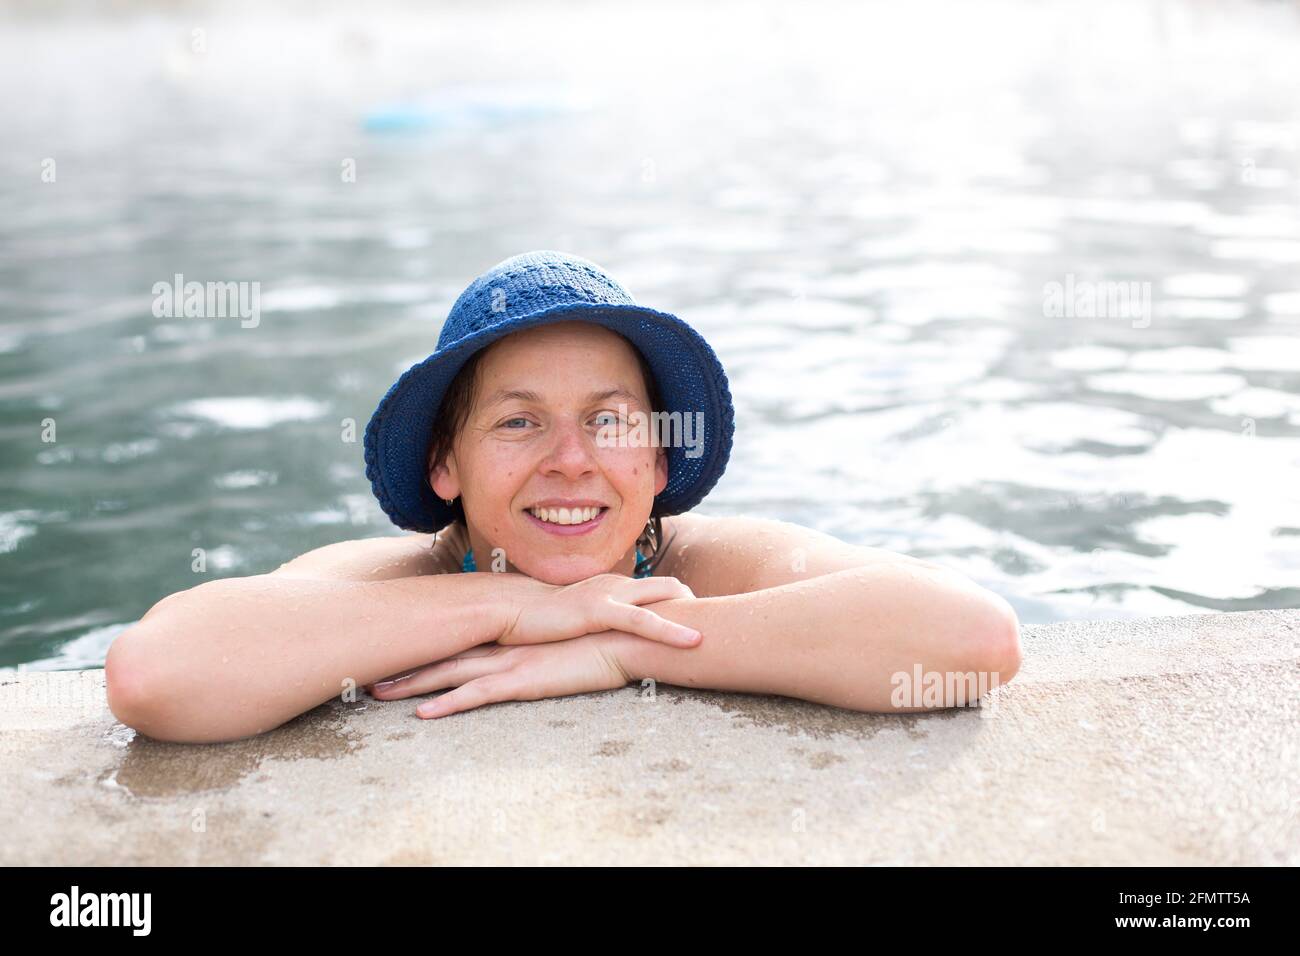 Portrait de la femme avec chapeau bleu reposant sur le bord de piscine de sources chaudes Banque D'Images